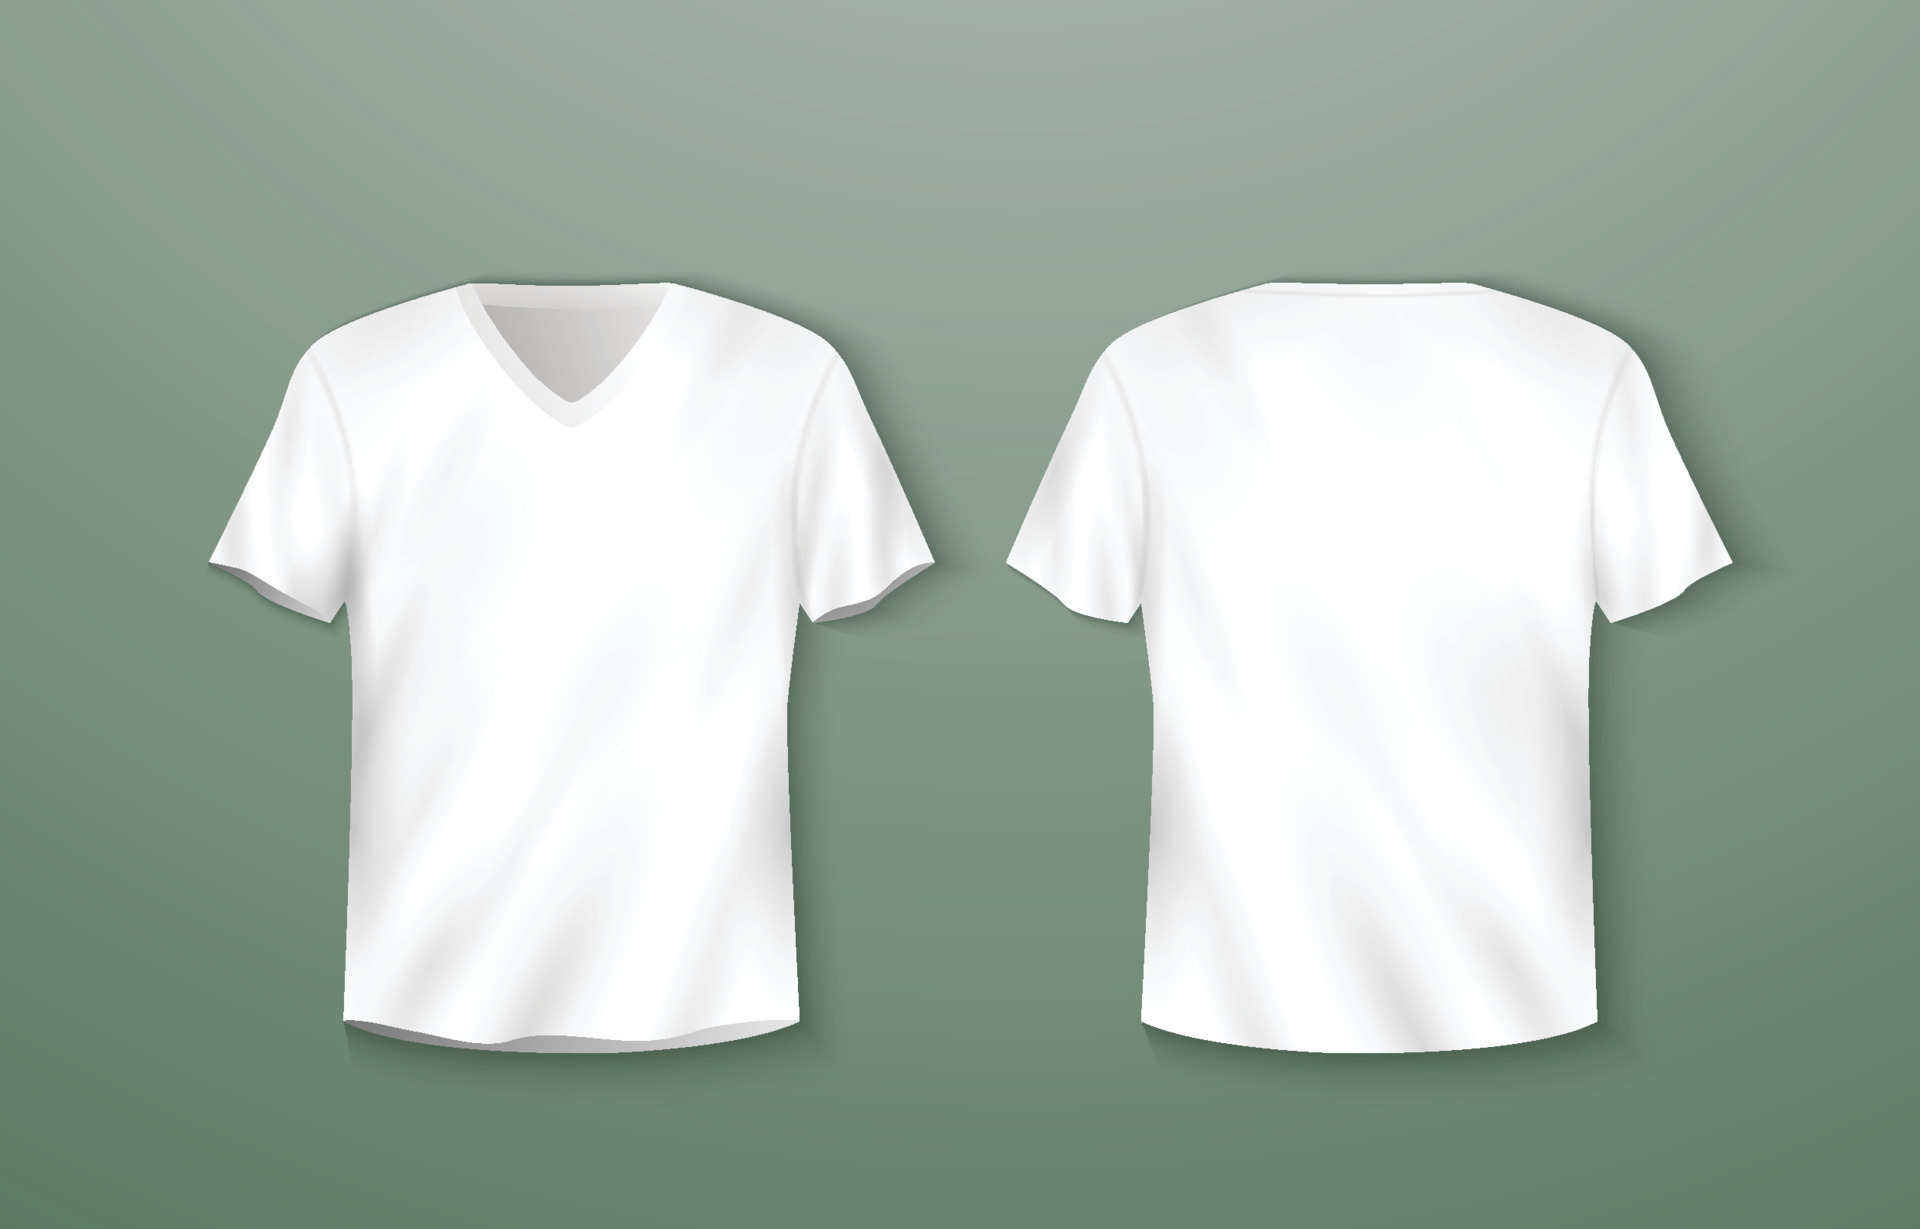 3D White V-Neck T-shirt Mockup 22589264 Vector Art at Vecteezy